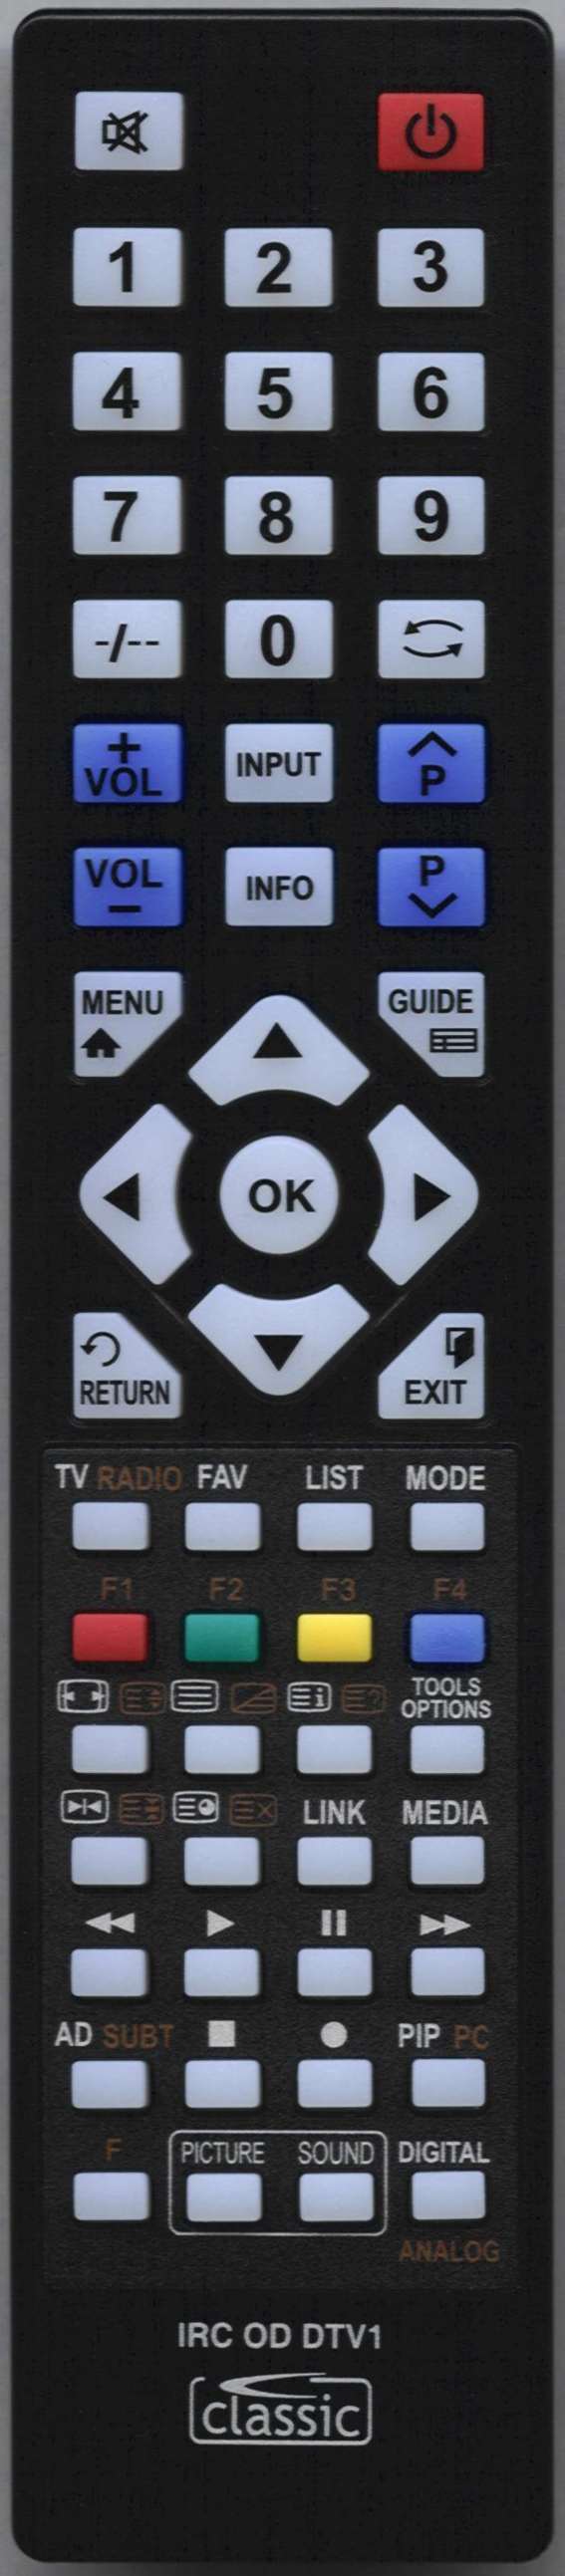 TOSHIBA CT-90300 Remote Control Alternative